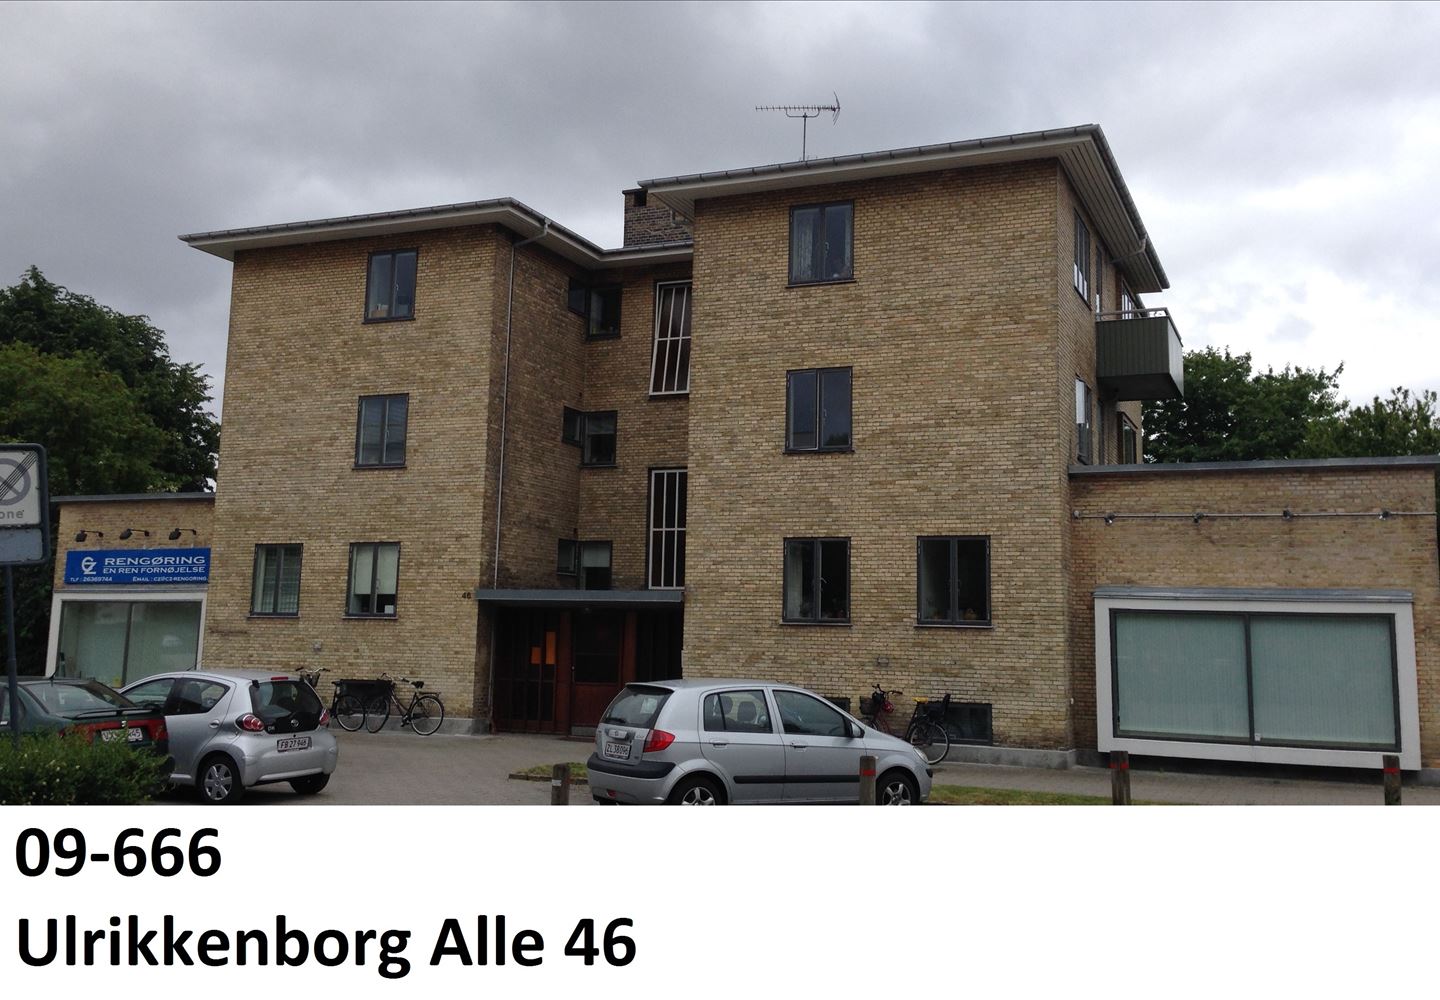 Ulrikkenborg Alle 46, 2. 14, 2800 Kongens Lyngby